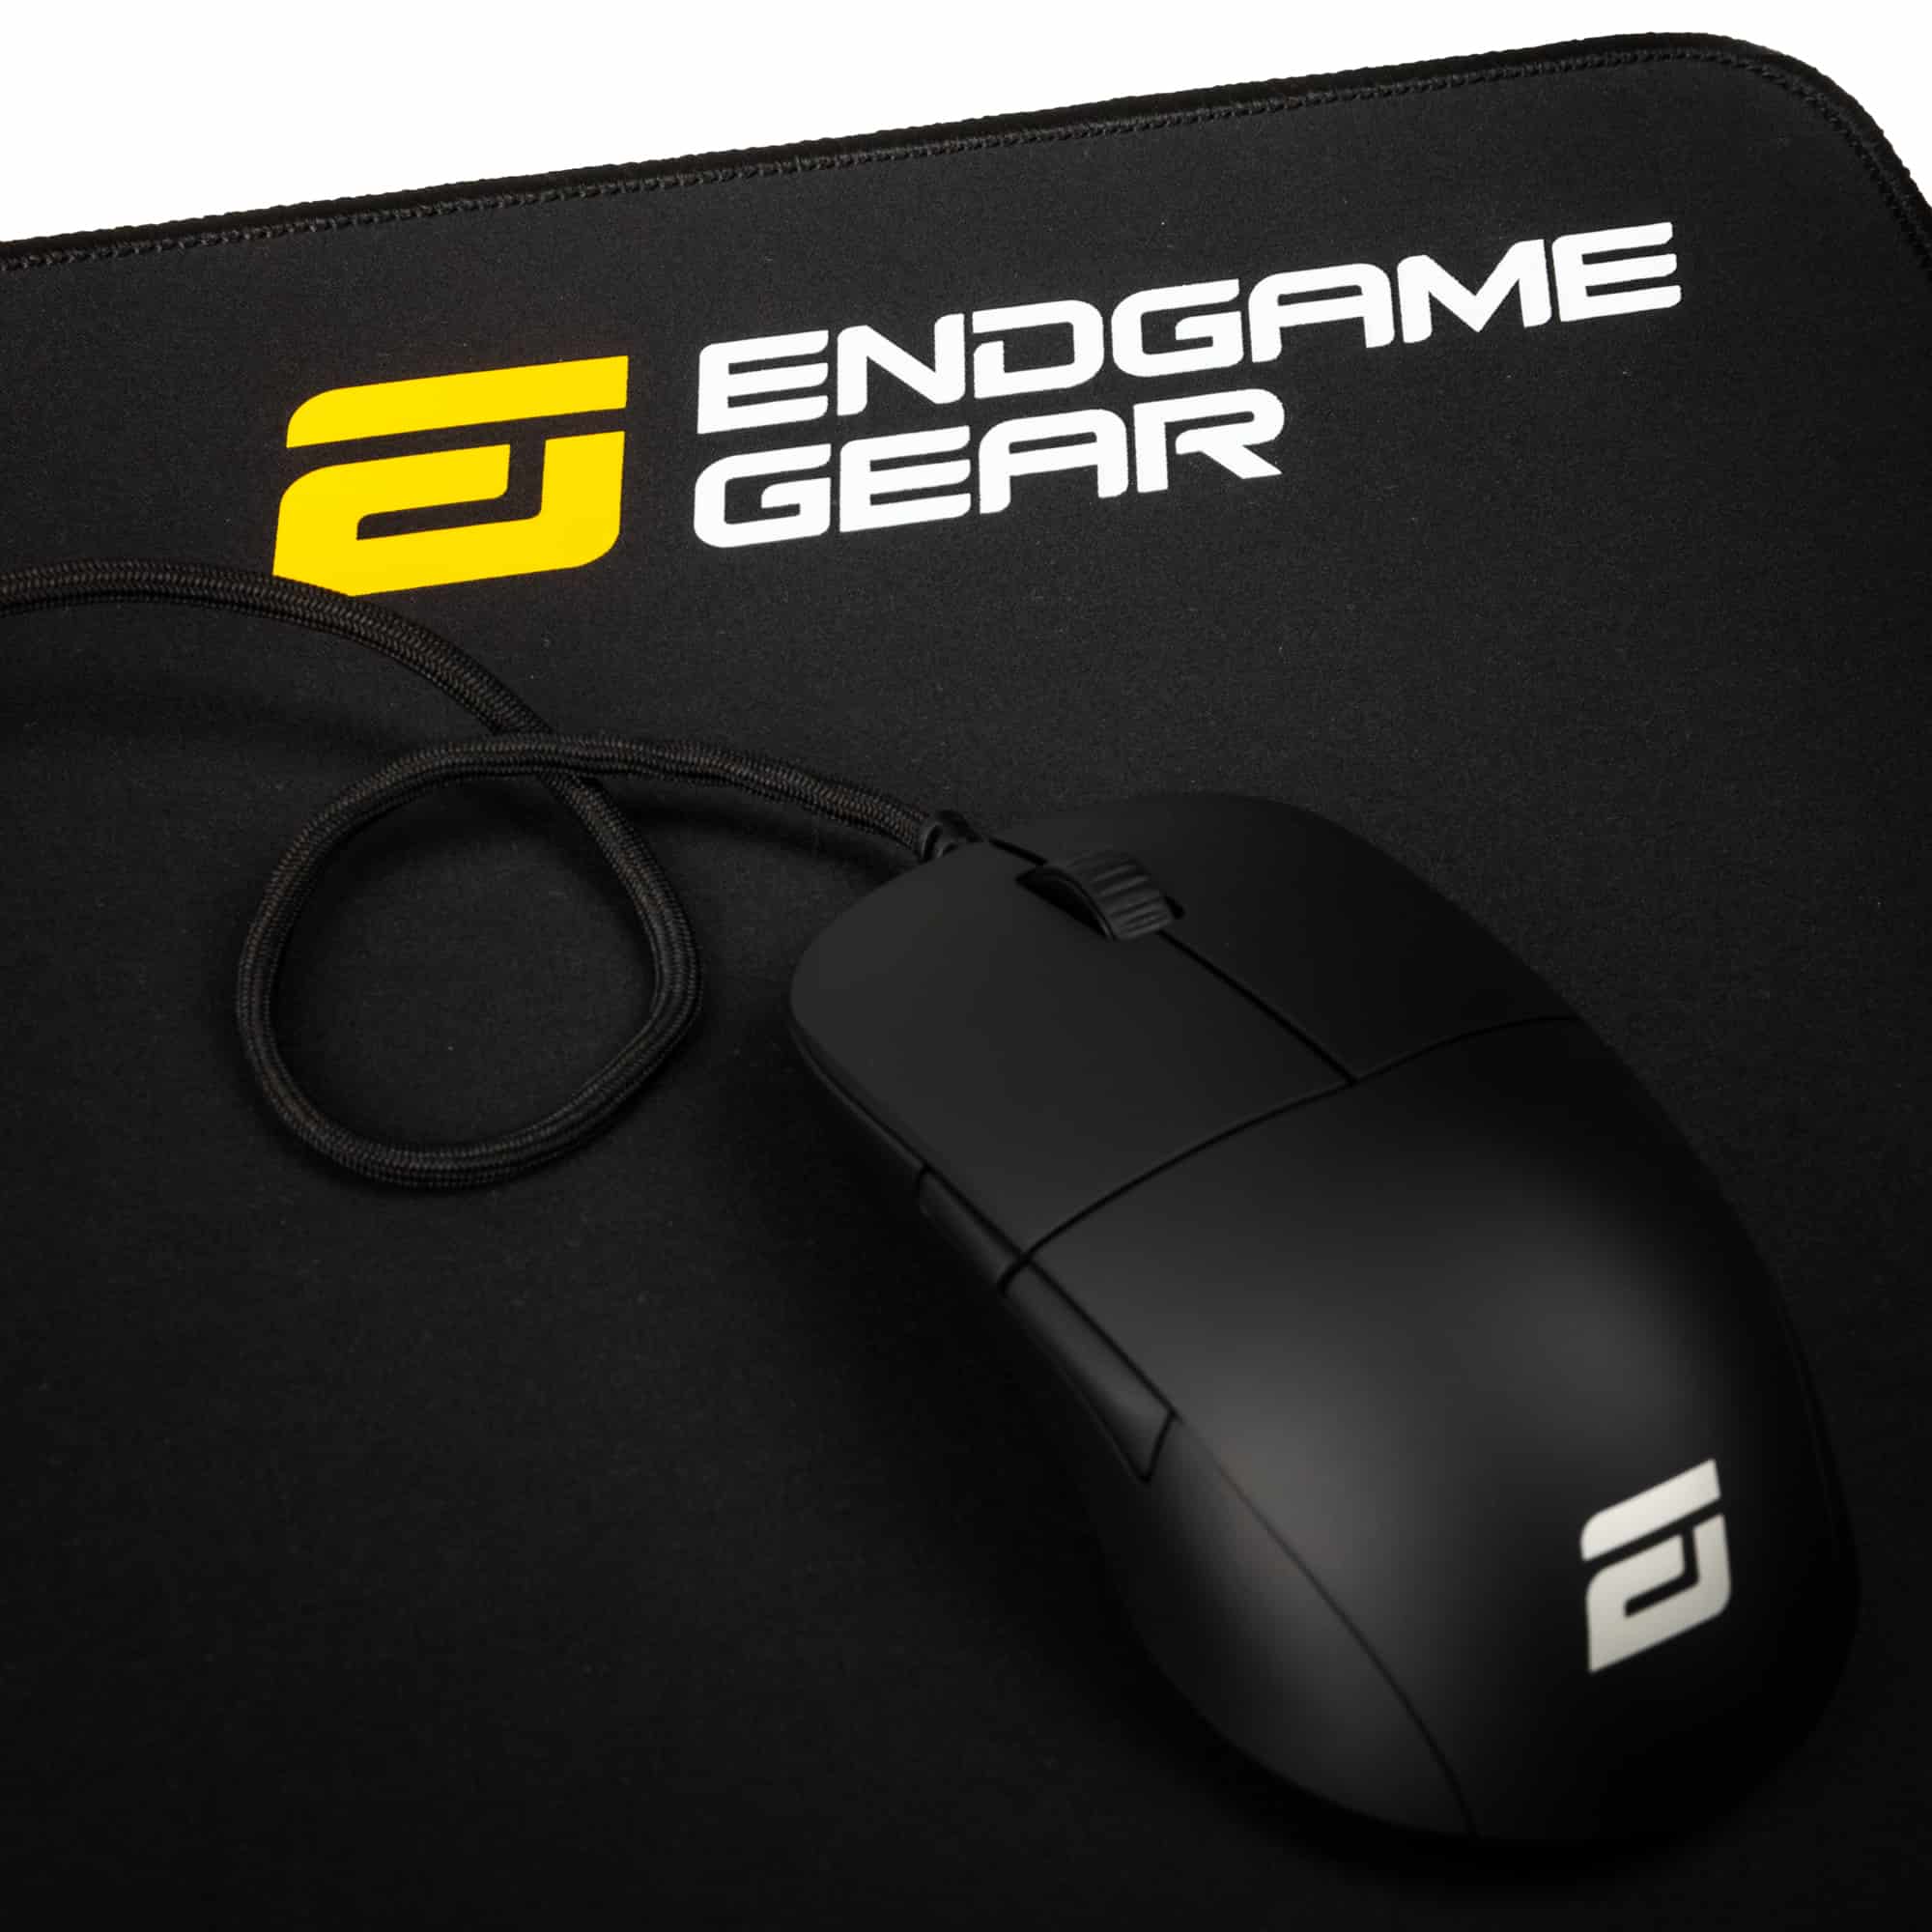 Endgame Gear MPJ-1200 Mousepad Black, 1200x600x3mm - black